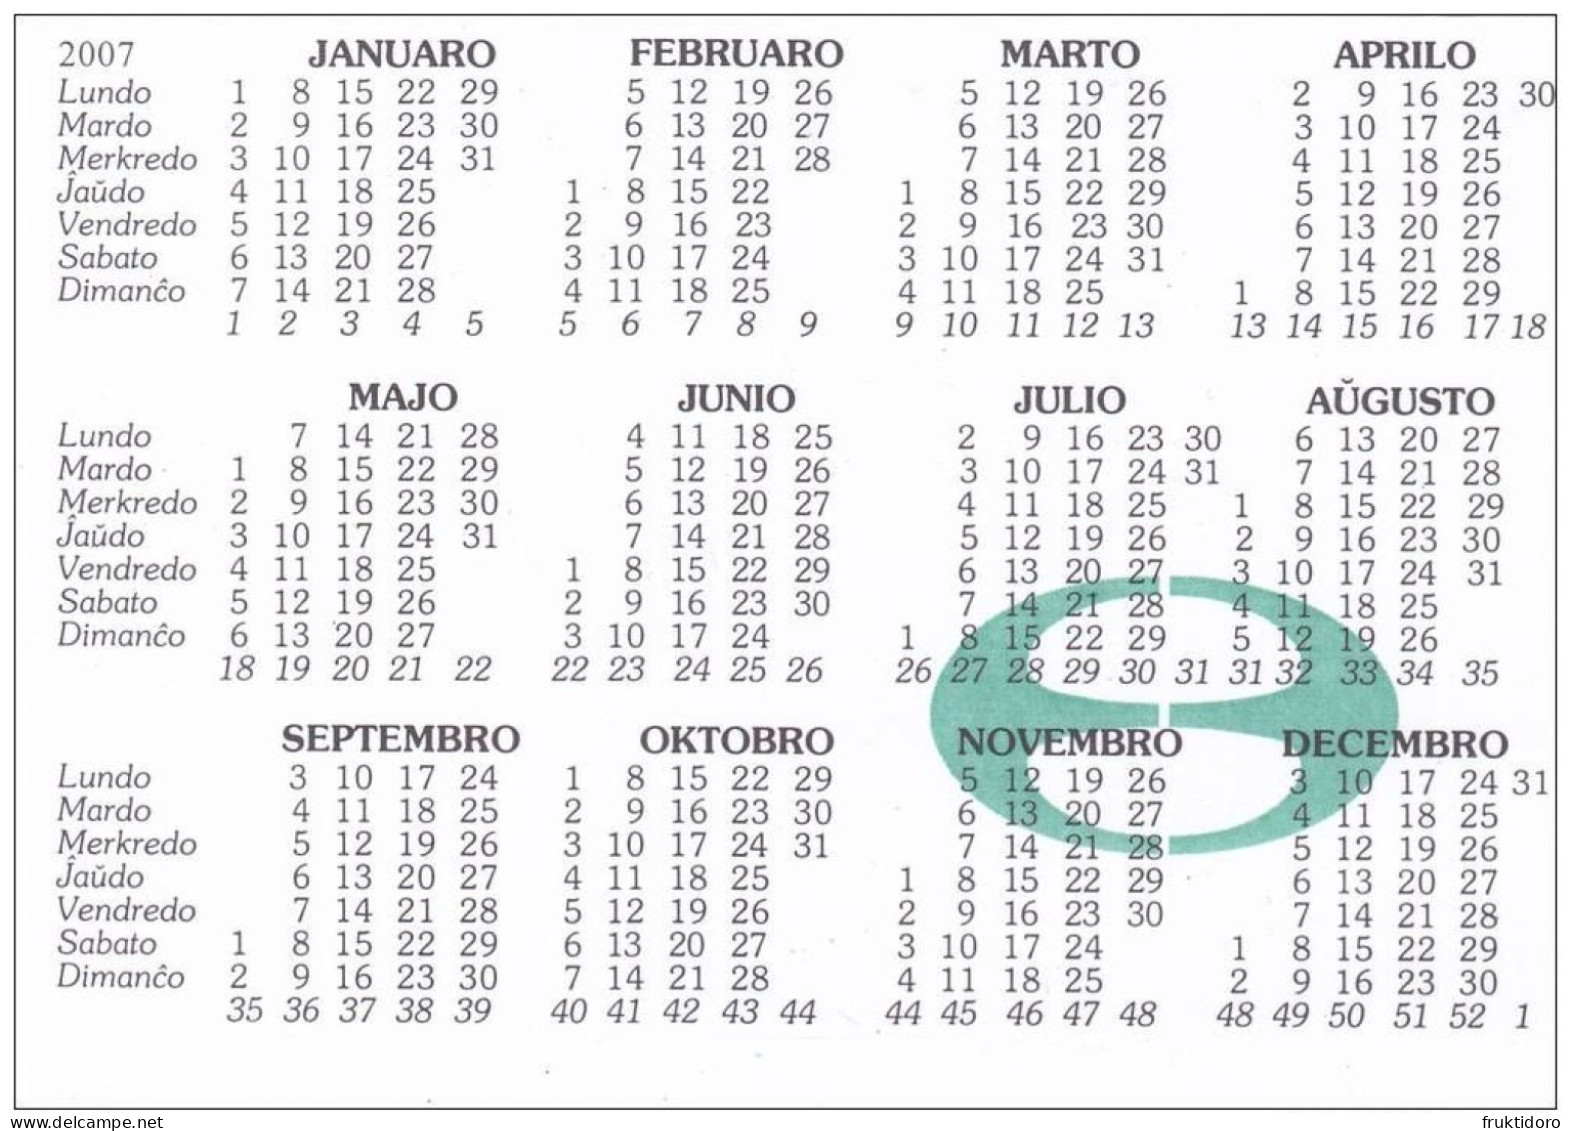 AKEO 15 Esperanto Cards Calendars 2002 / 2007 - Kalendaro - Esperanto